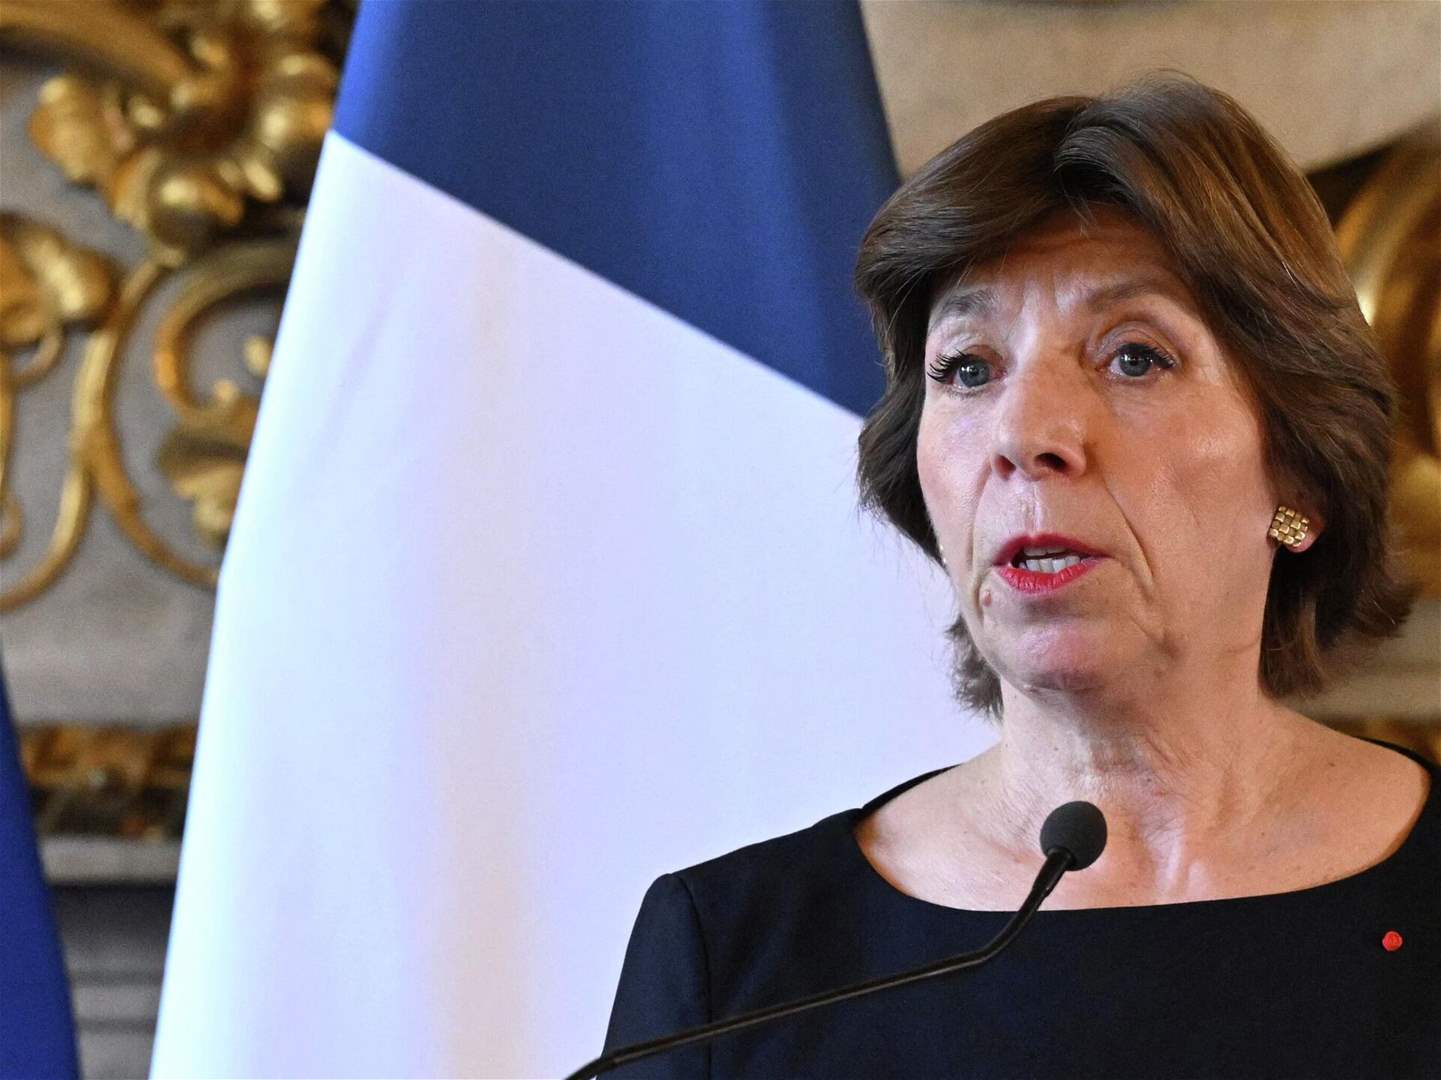 النهار: وزيرة الخارجية الفرنسية لم تحمل جديداً حيال لبنان يختلف عن زيارتها السابقة 